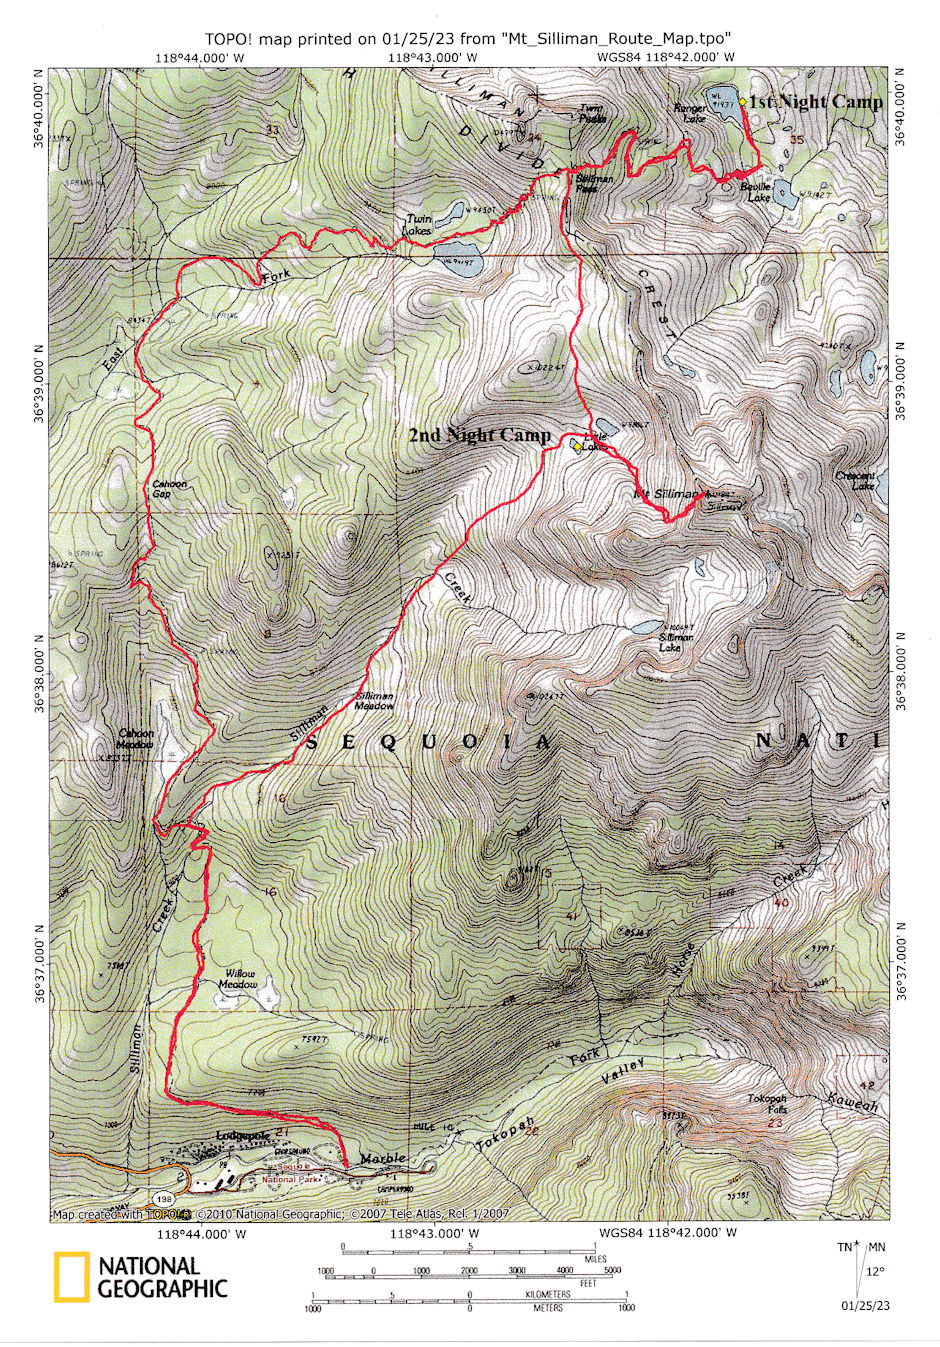 Mt. Silliman Route Map